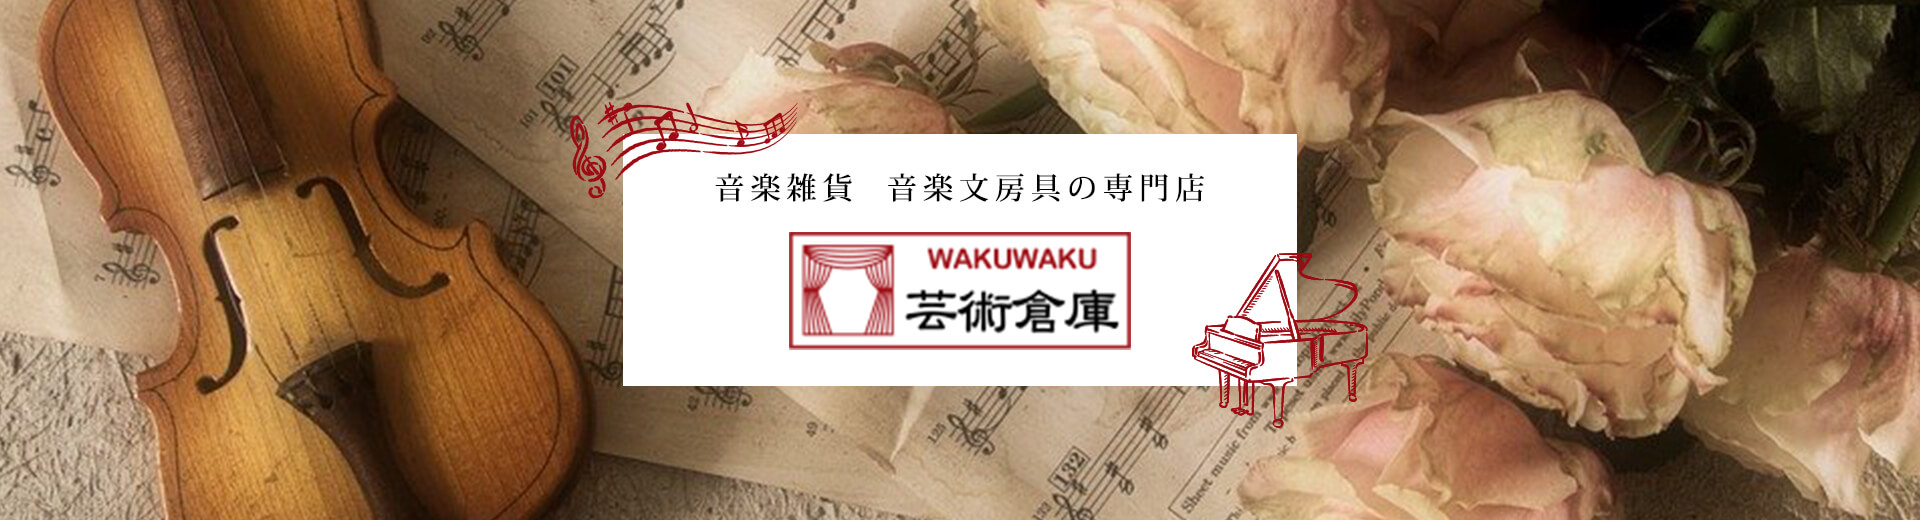 音楽雑貨 音楽文具の専門店 WAKUWAKU 芸術倉庫